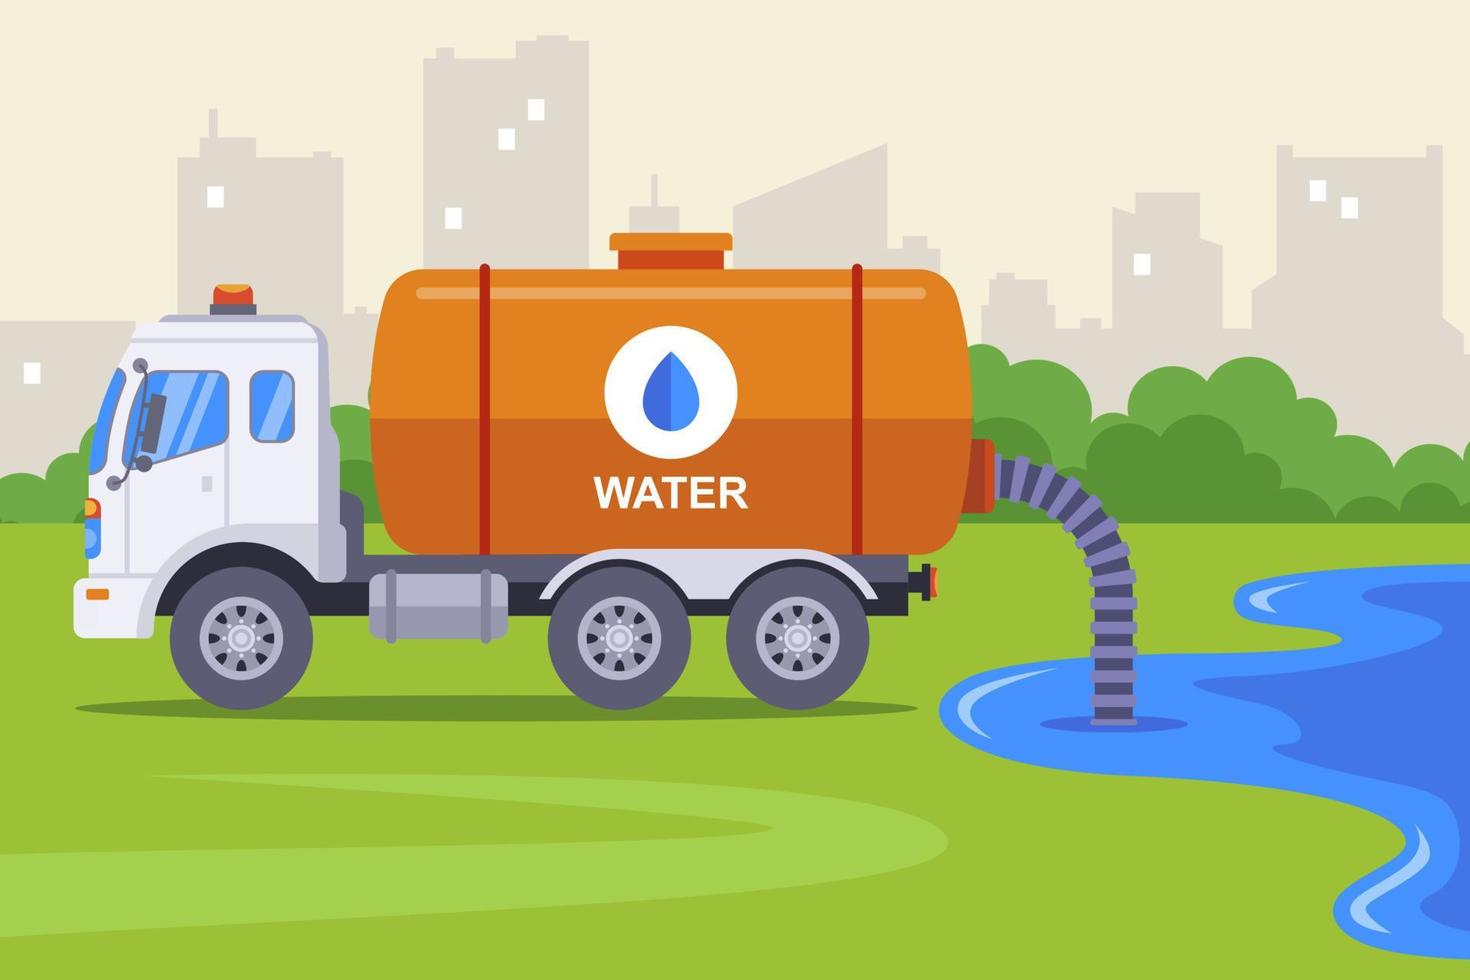 il camion scarica l'acqua dal fiume dal tubo nella sua canna. illustrazione vettoriale piatta.